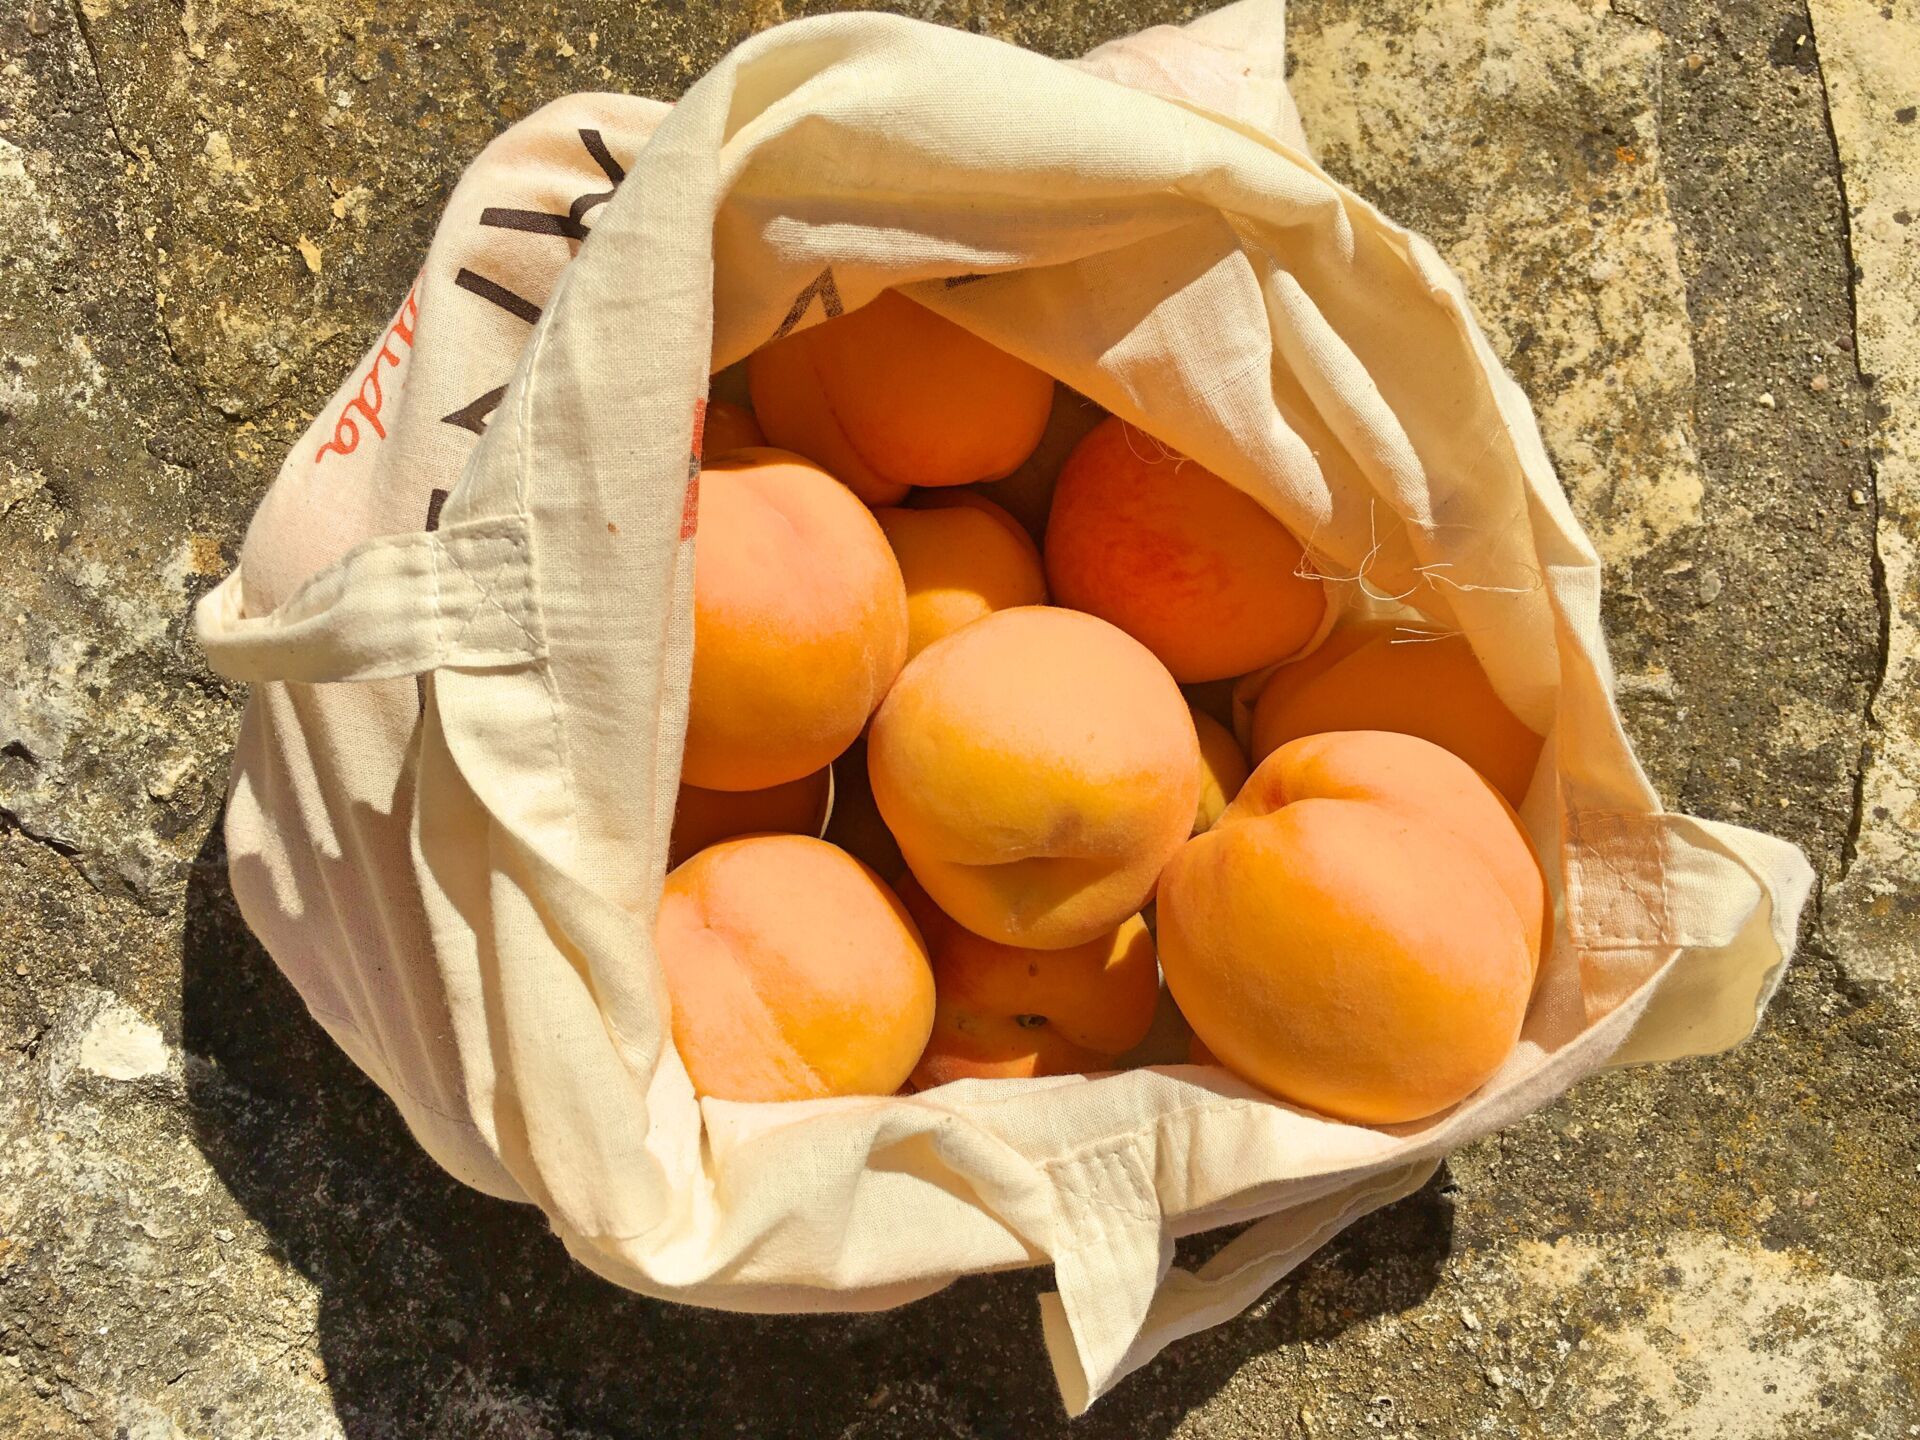 Portuguese peaches